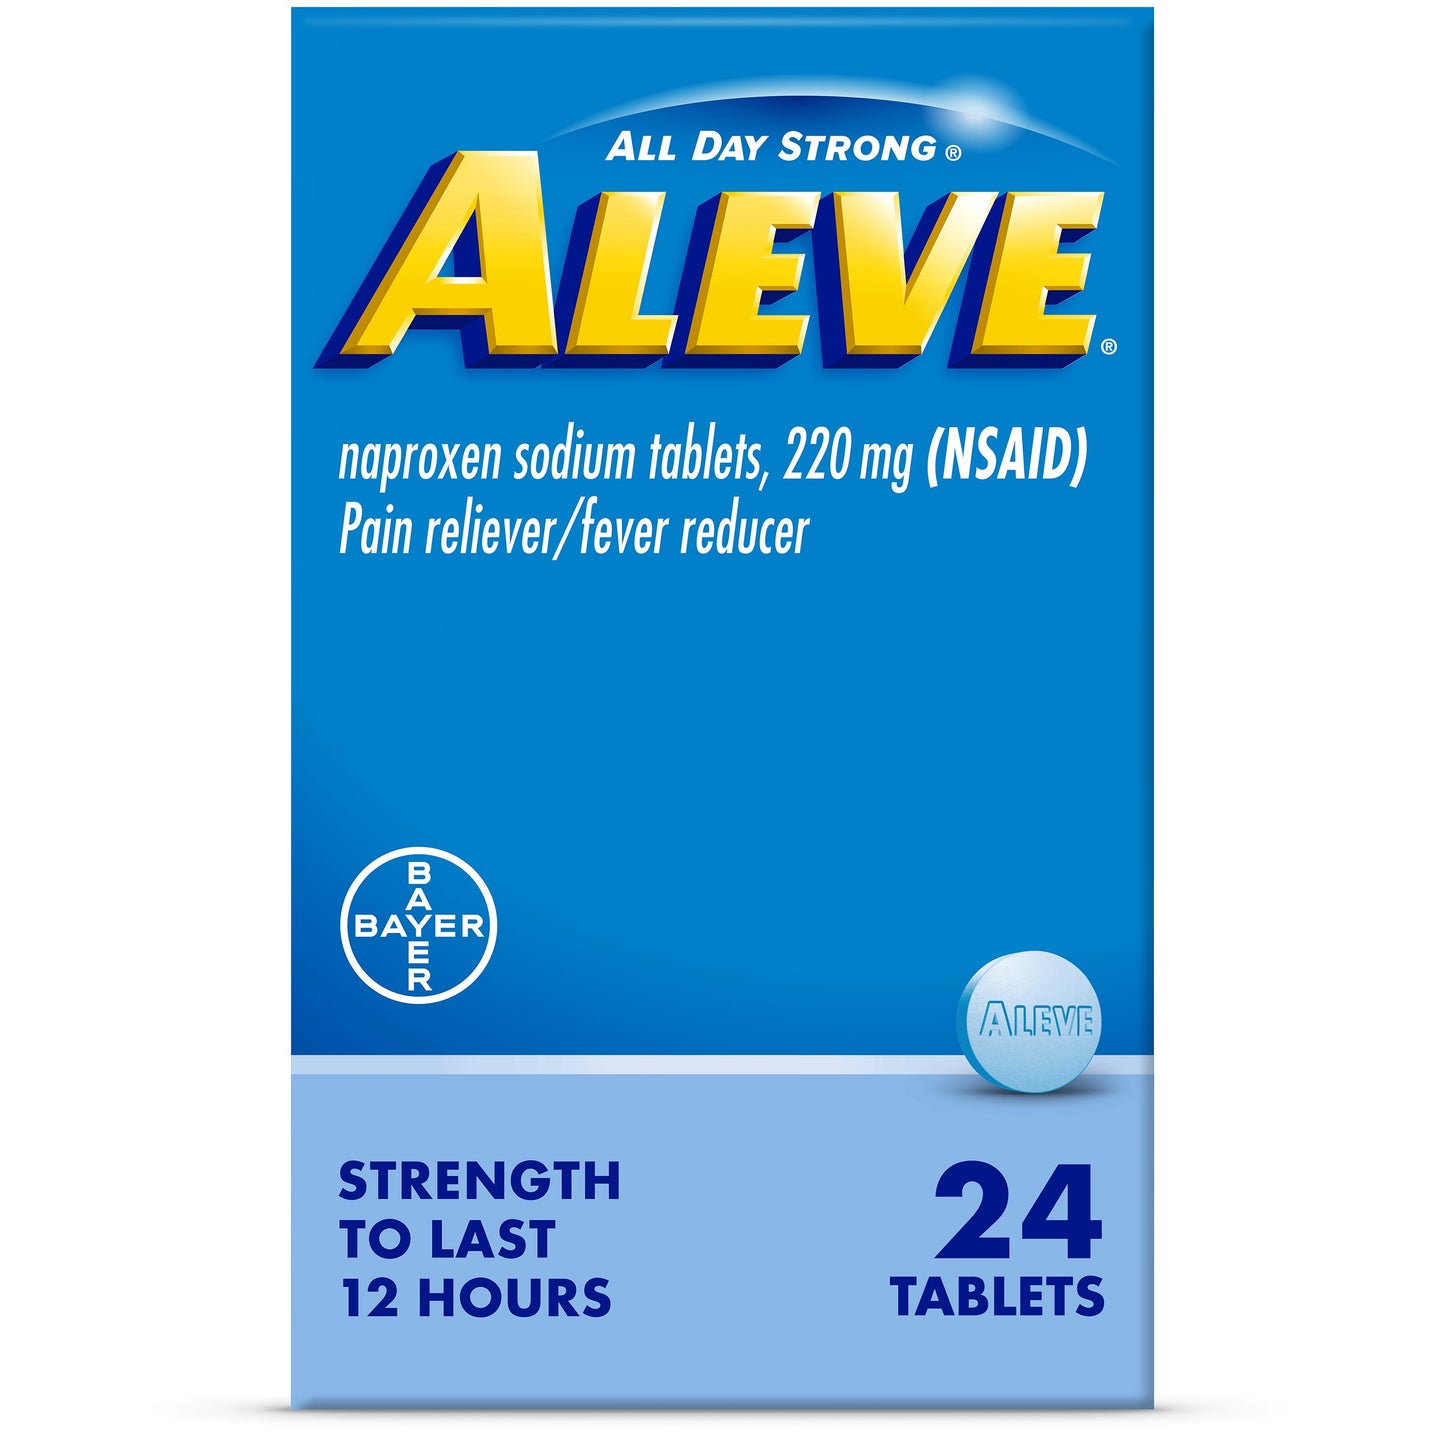 Aleve 24 Tablets